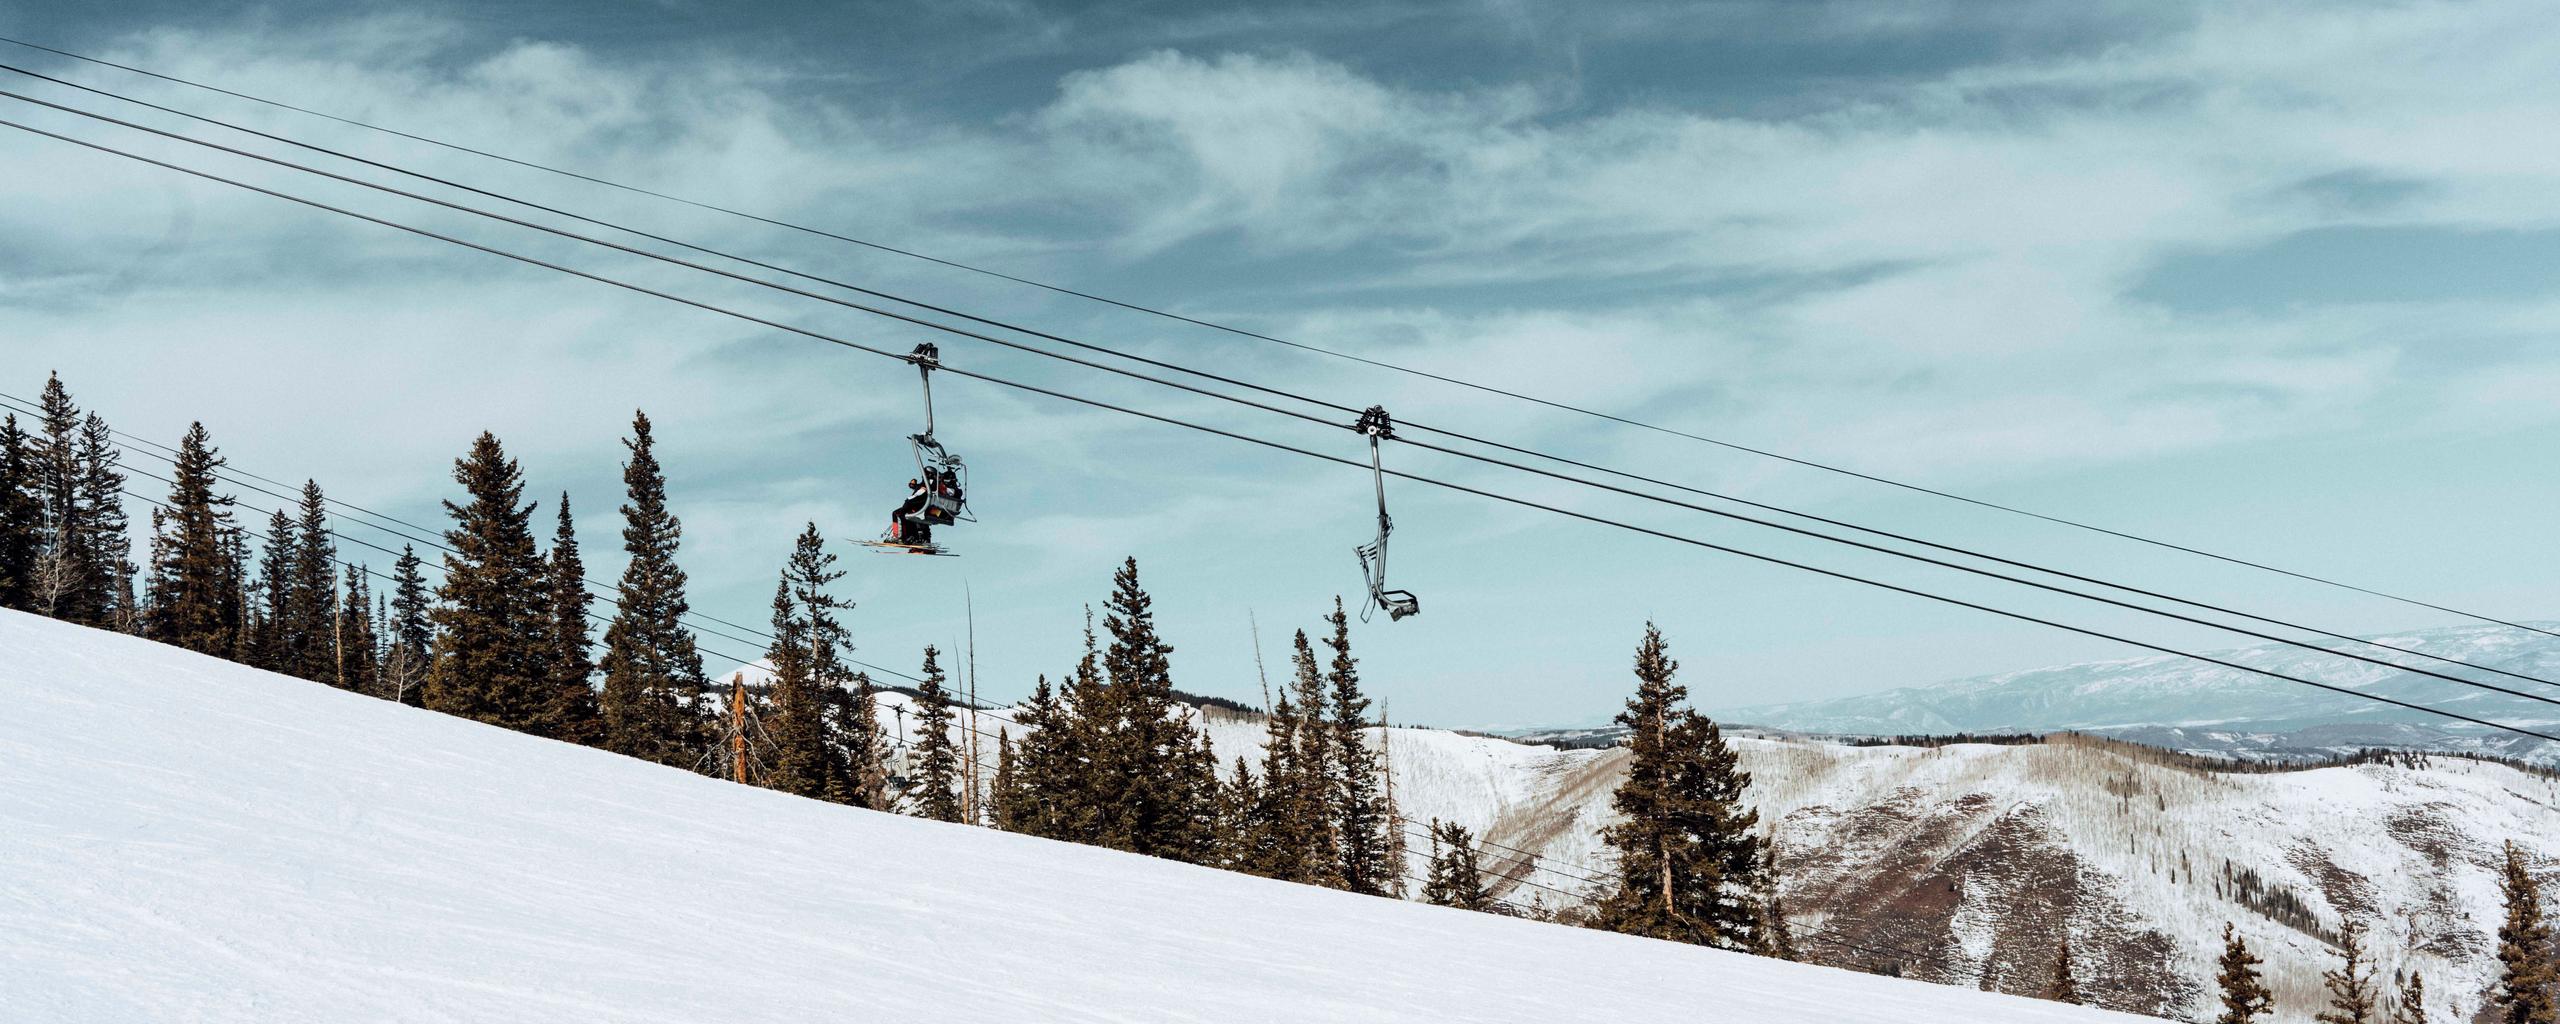 Ski chairlift in Aspen, Colorado